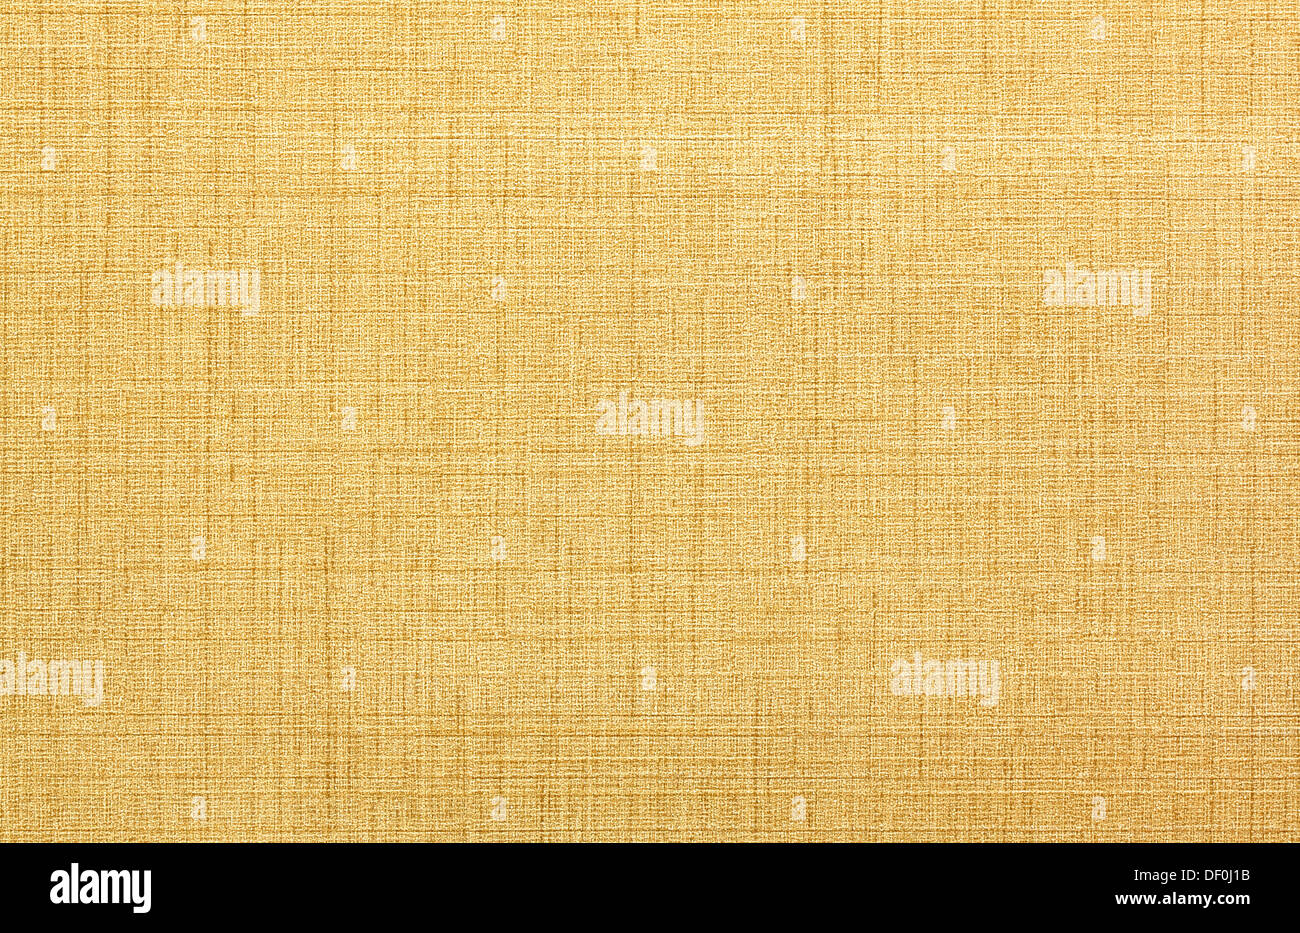 Papel tapiz en las paredes fotografías e imágenes de alta resolución - Alamy